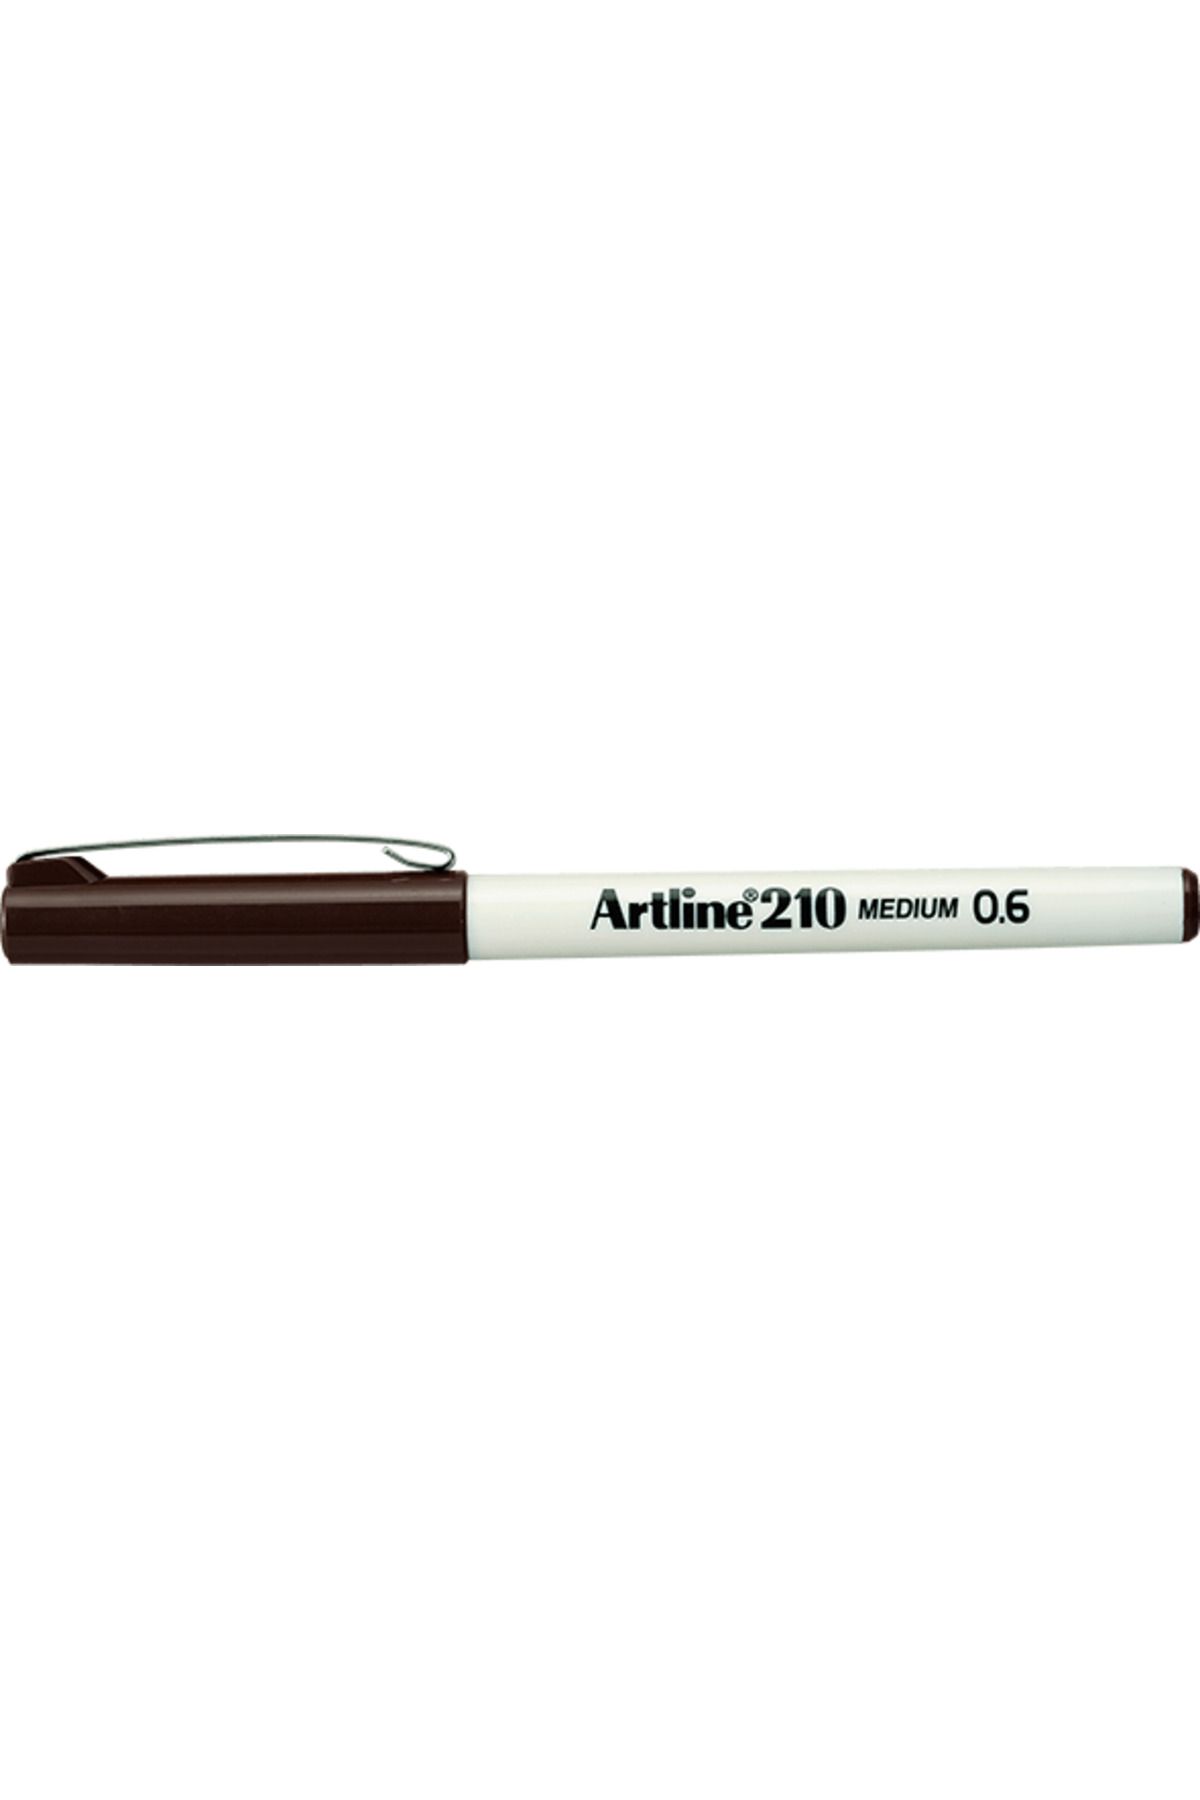 artline 210 Keçe Uçlu Kalem 0.6mm Medium Liner Koyu Kahverengi